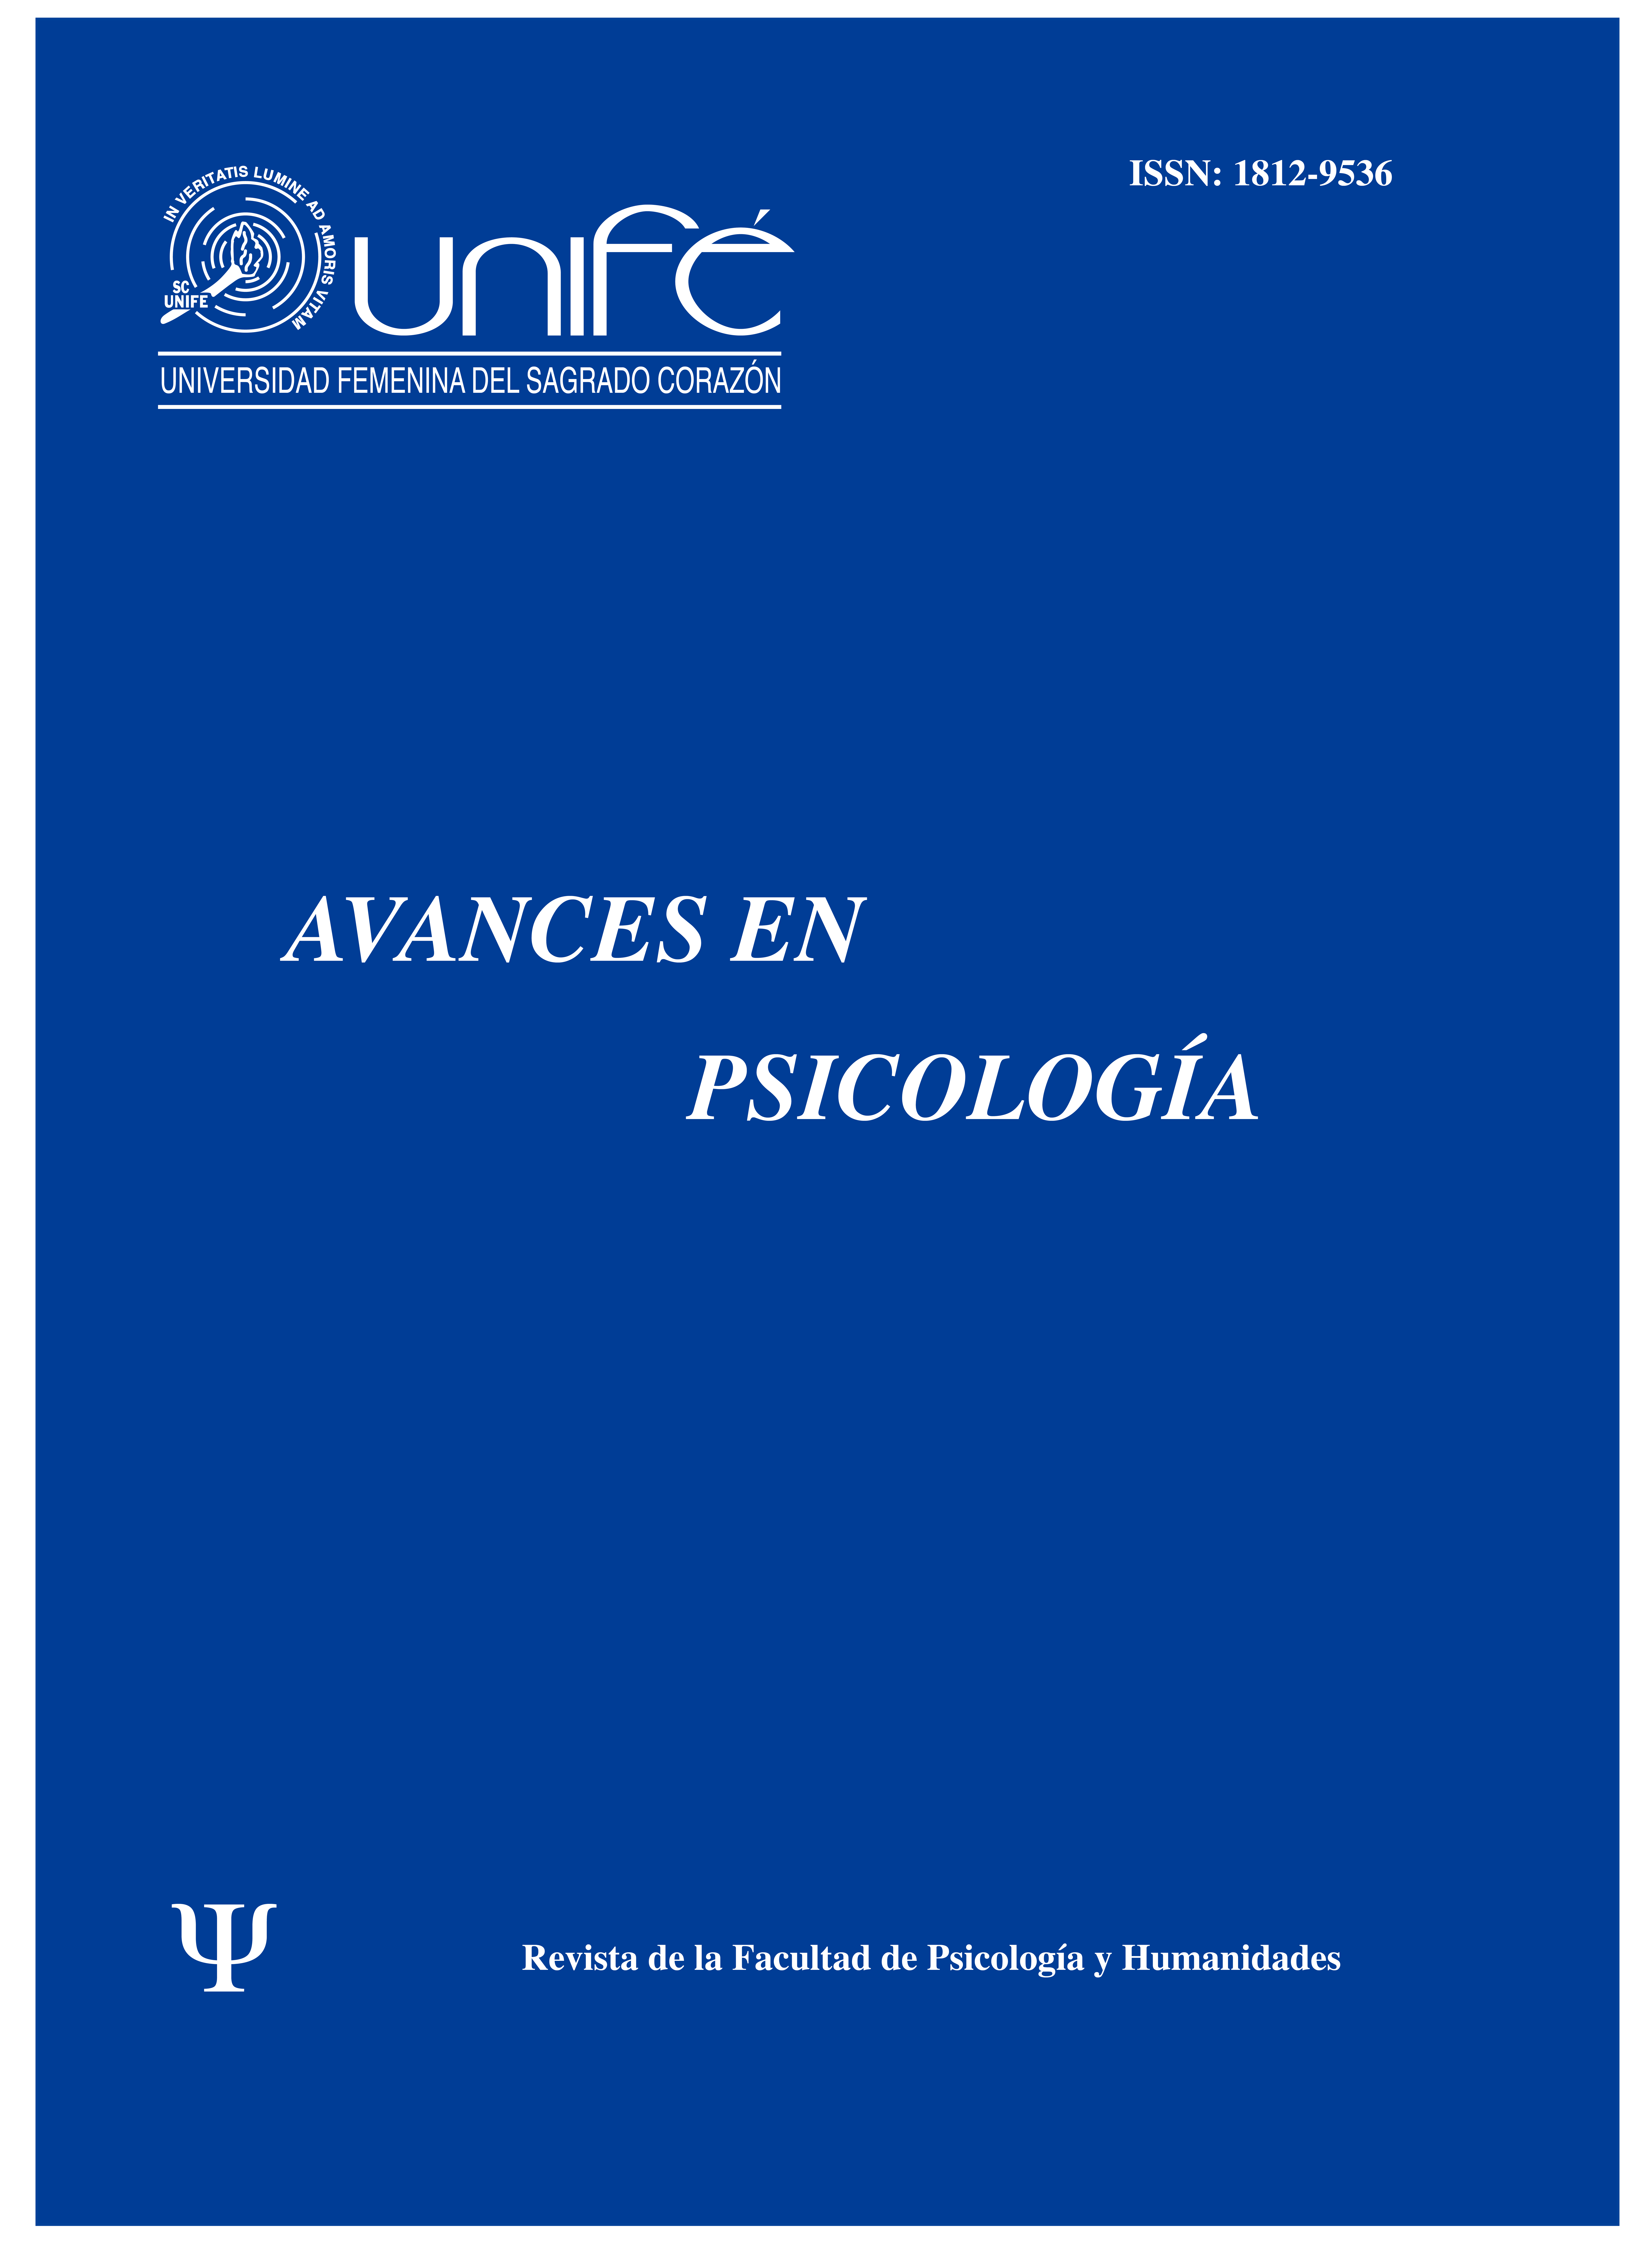 					Ver Vol. 25 Núm. 1 (2017): Avances en Psicología: Revista de la Facultad de Psicología y Humanidades
				